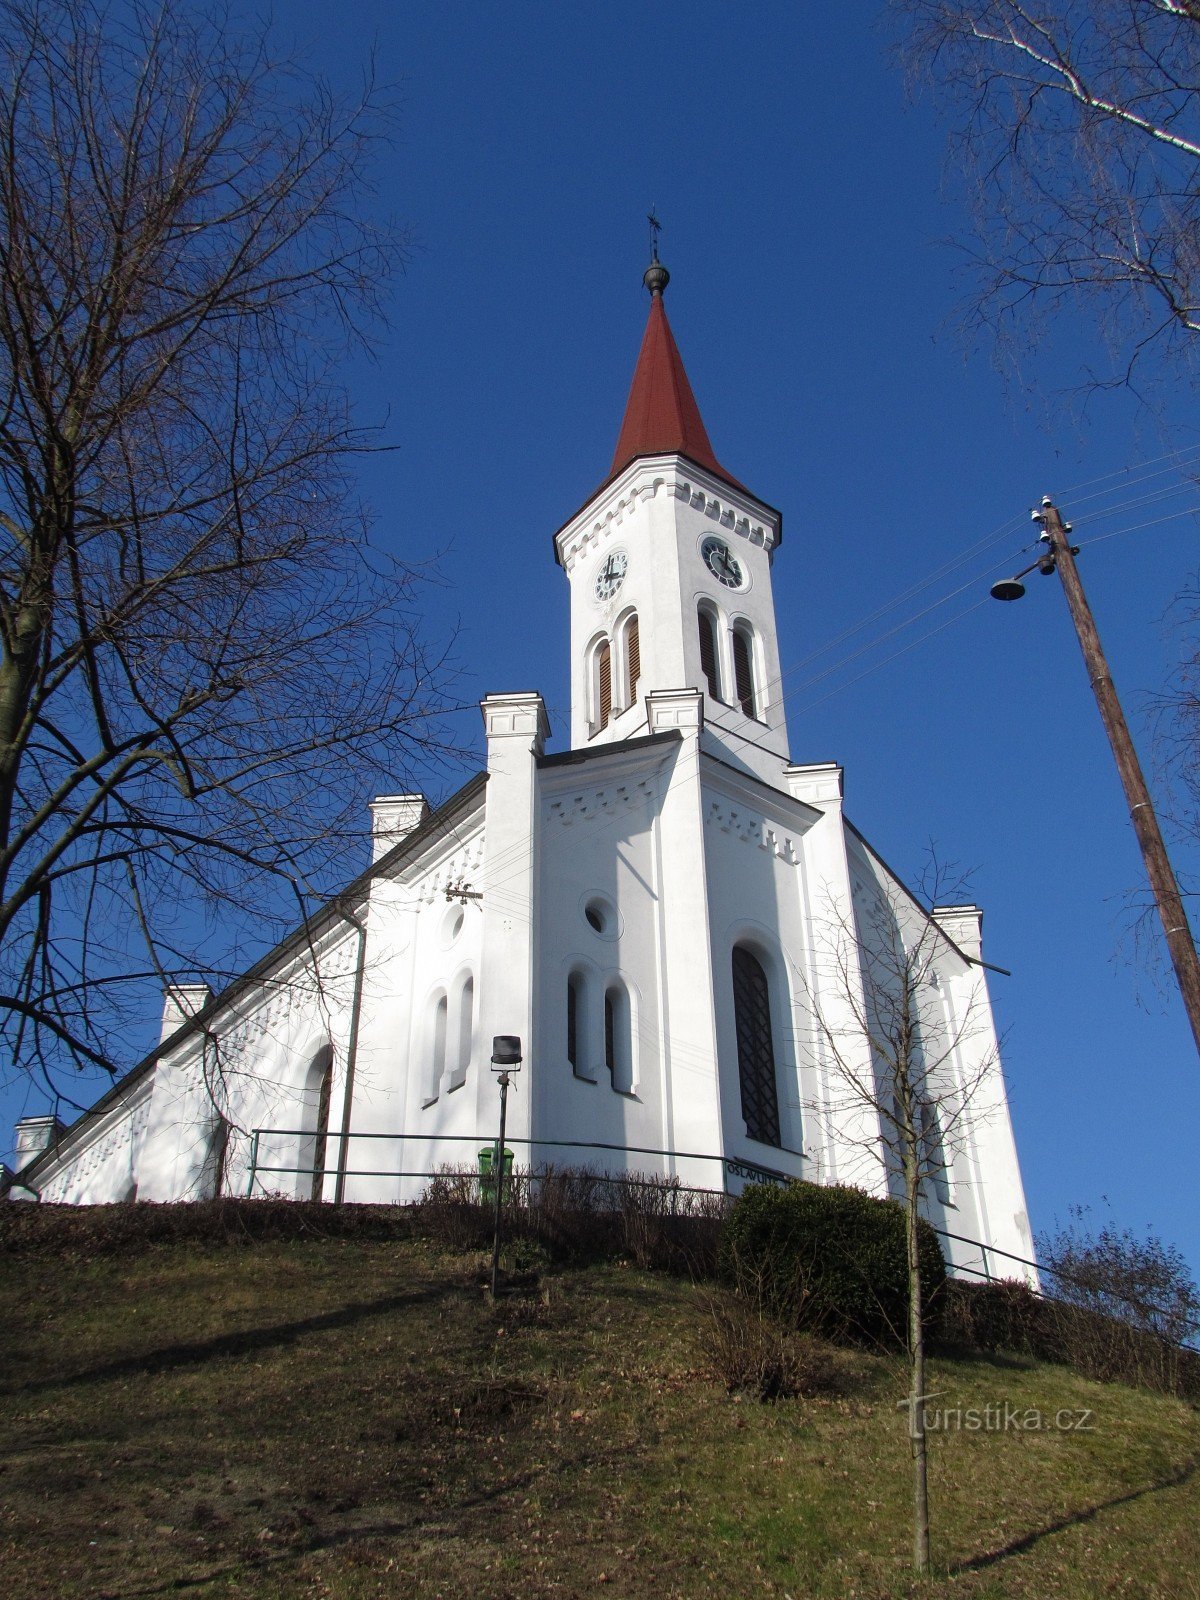 Zádveřice-Raková - biserica evanghelică